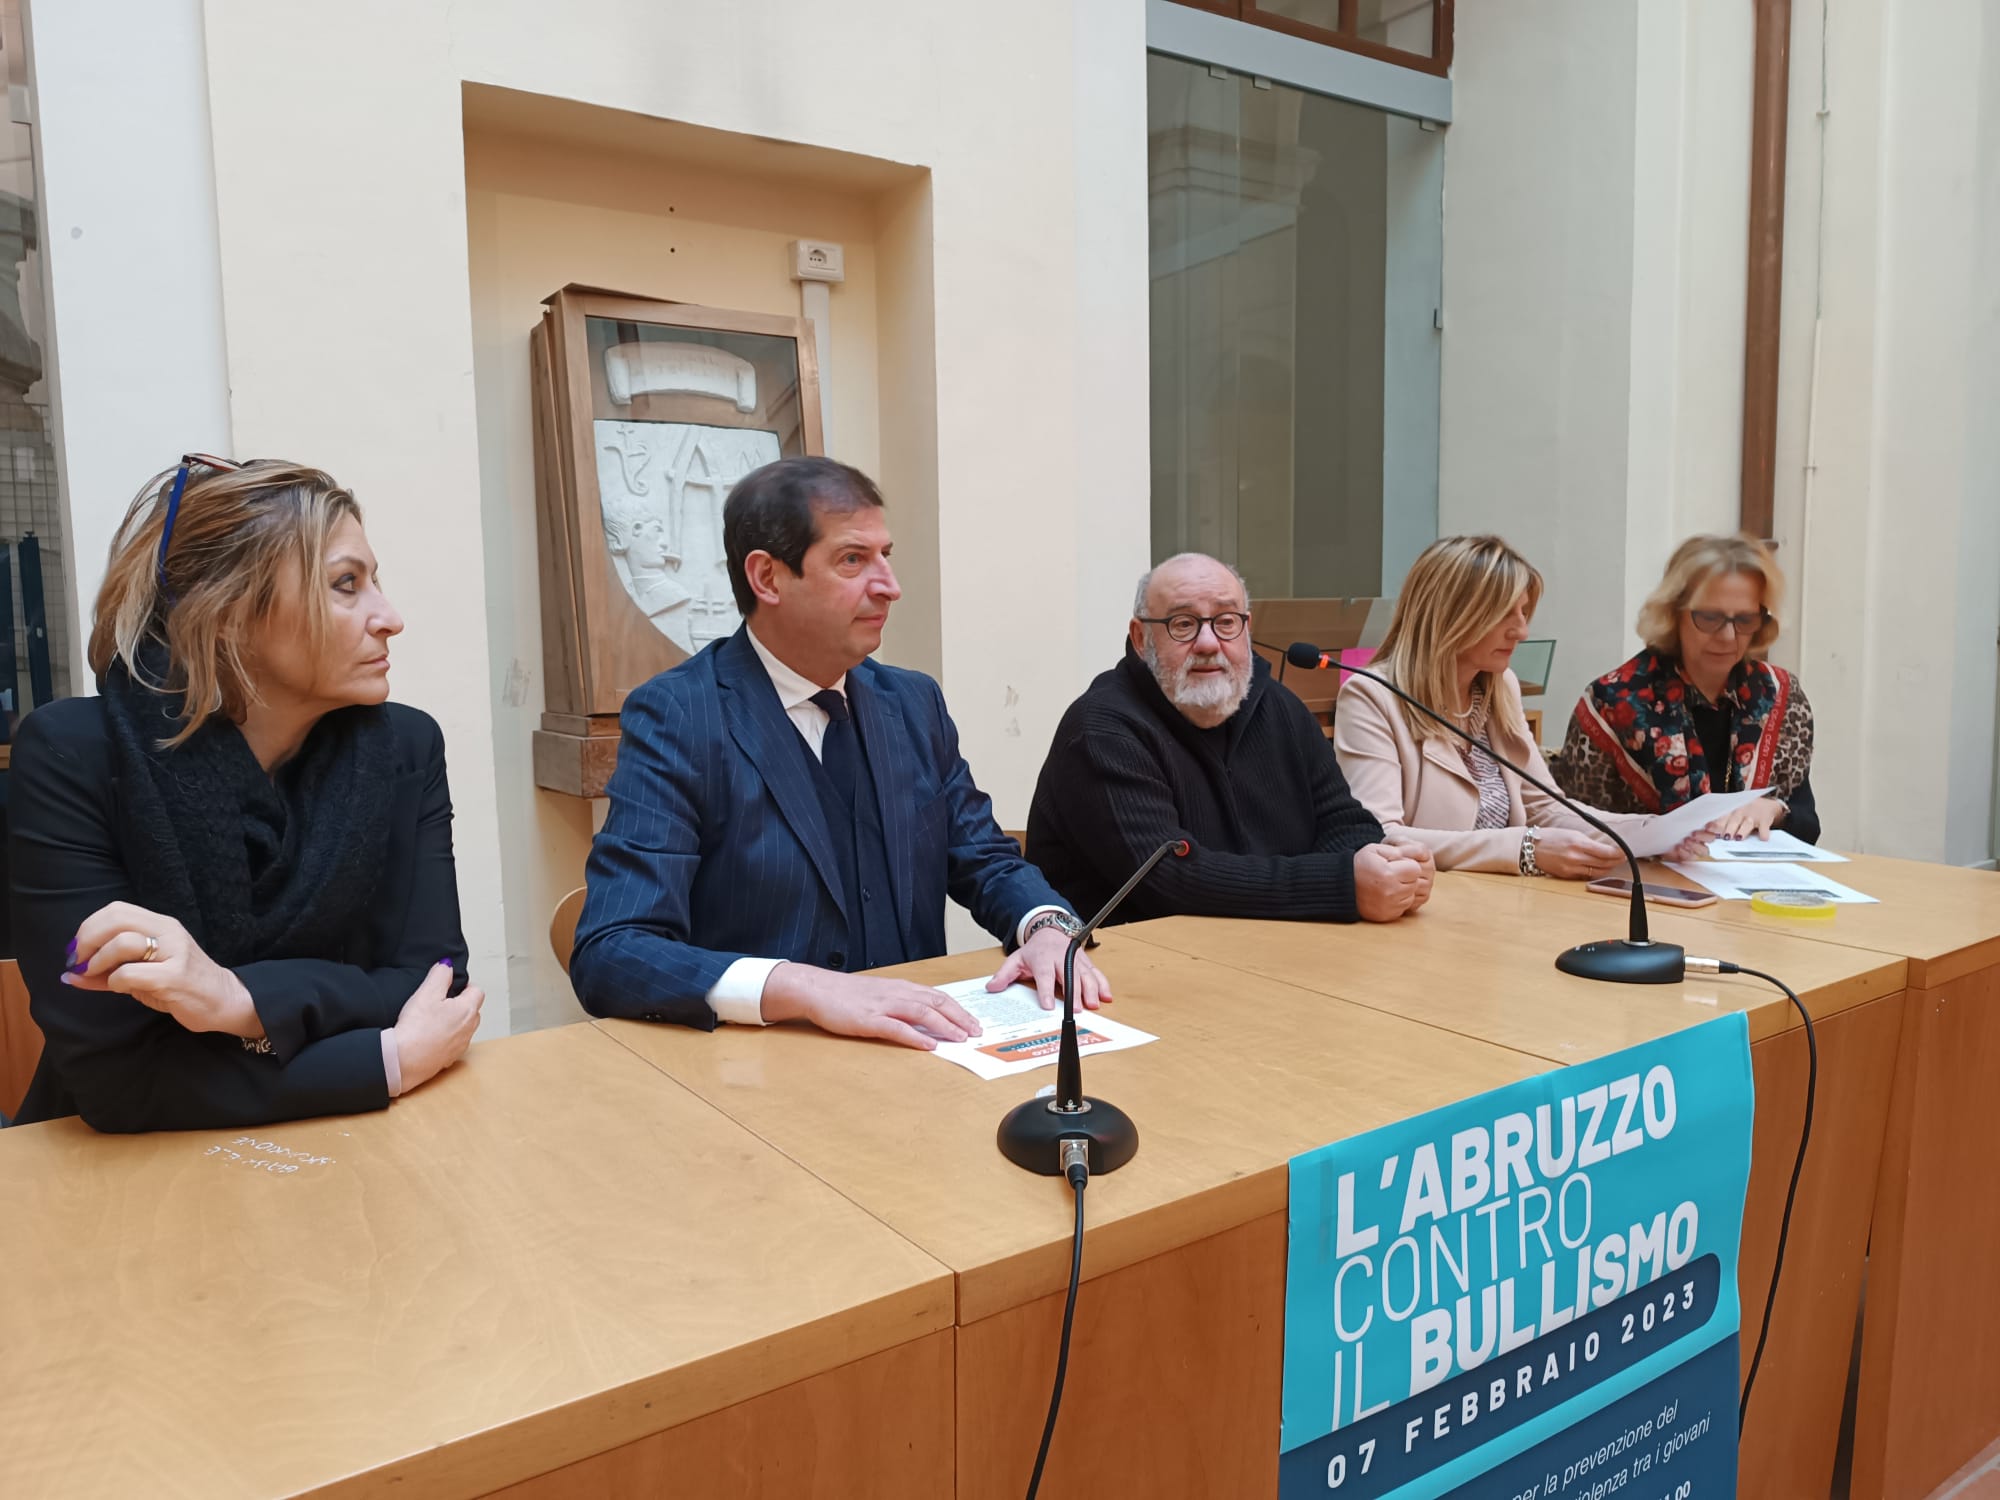 Progetto “Abruzzo contro il bullismo”: oggi presentazione a Teramo. Da domani incontri in tutta la Regione